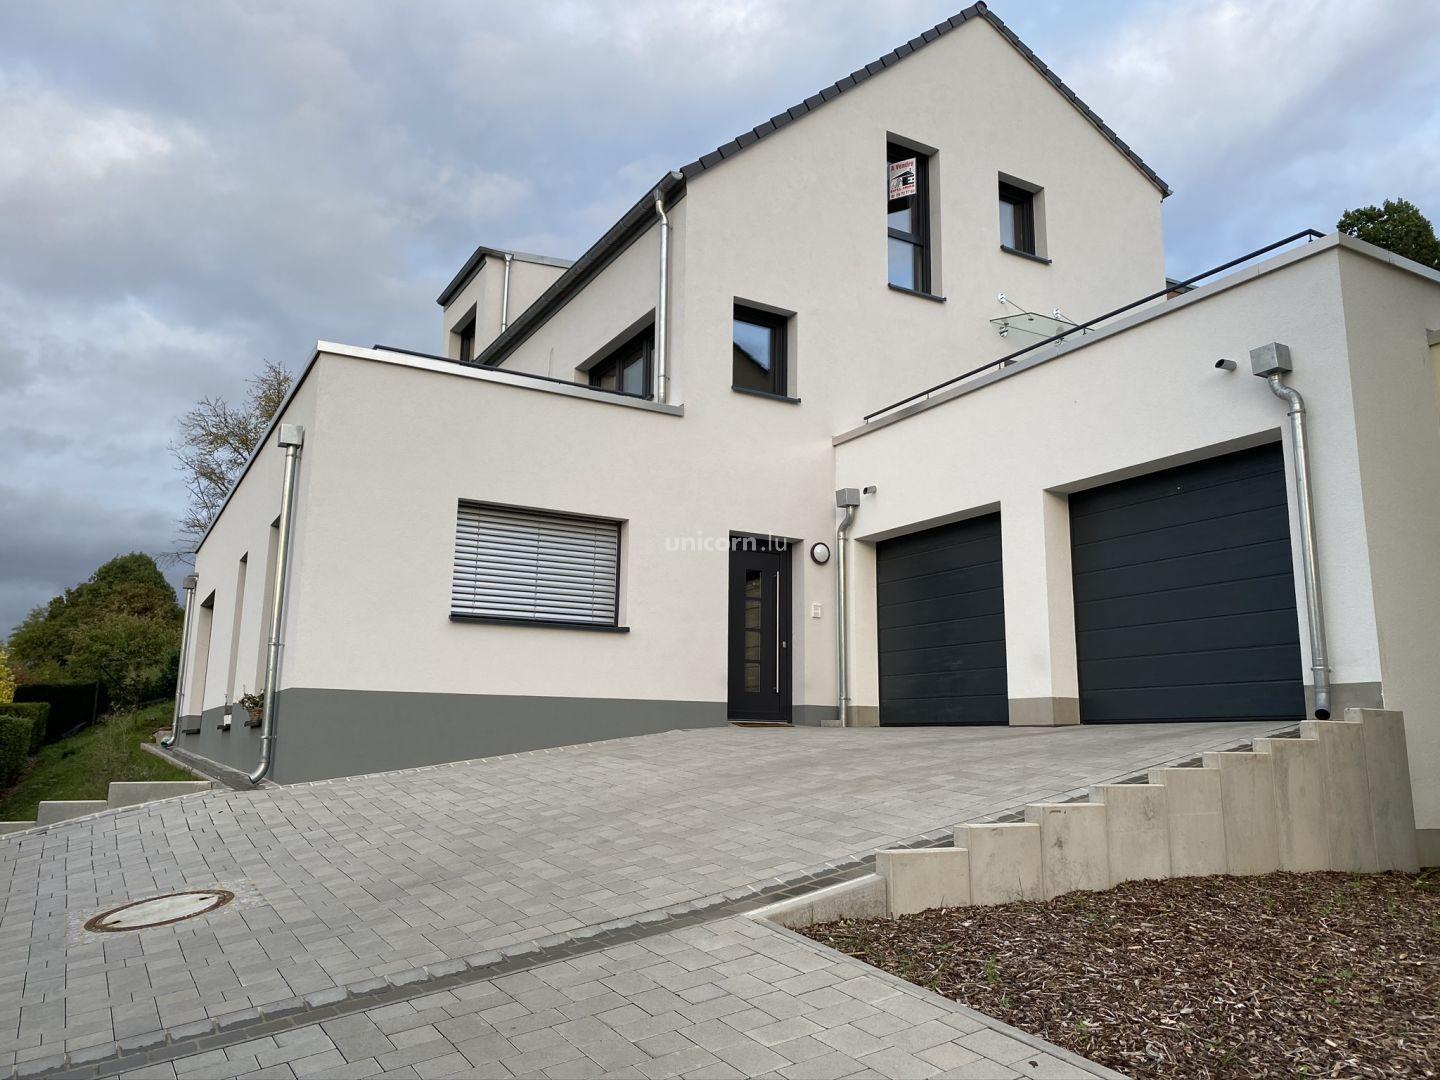 Wohnung zu verkaufen in Echternach  - 153m²